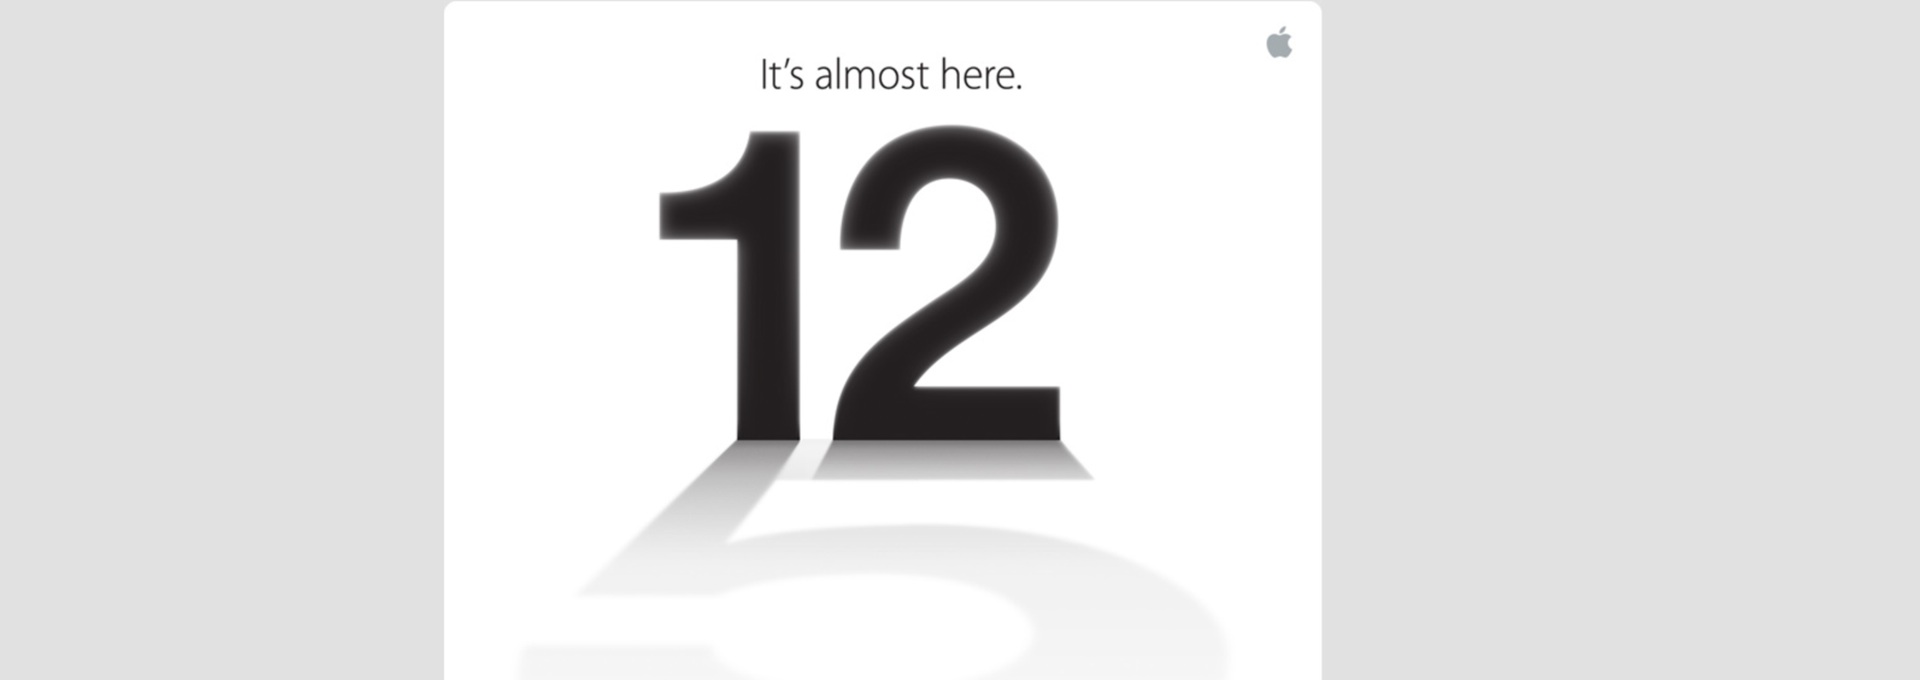 Apple annonce un événement le 12 septembre: iPhone 5 en vue !